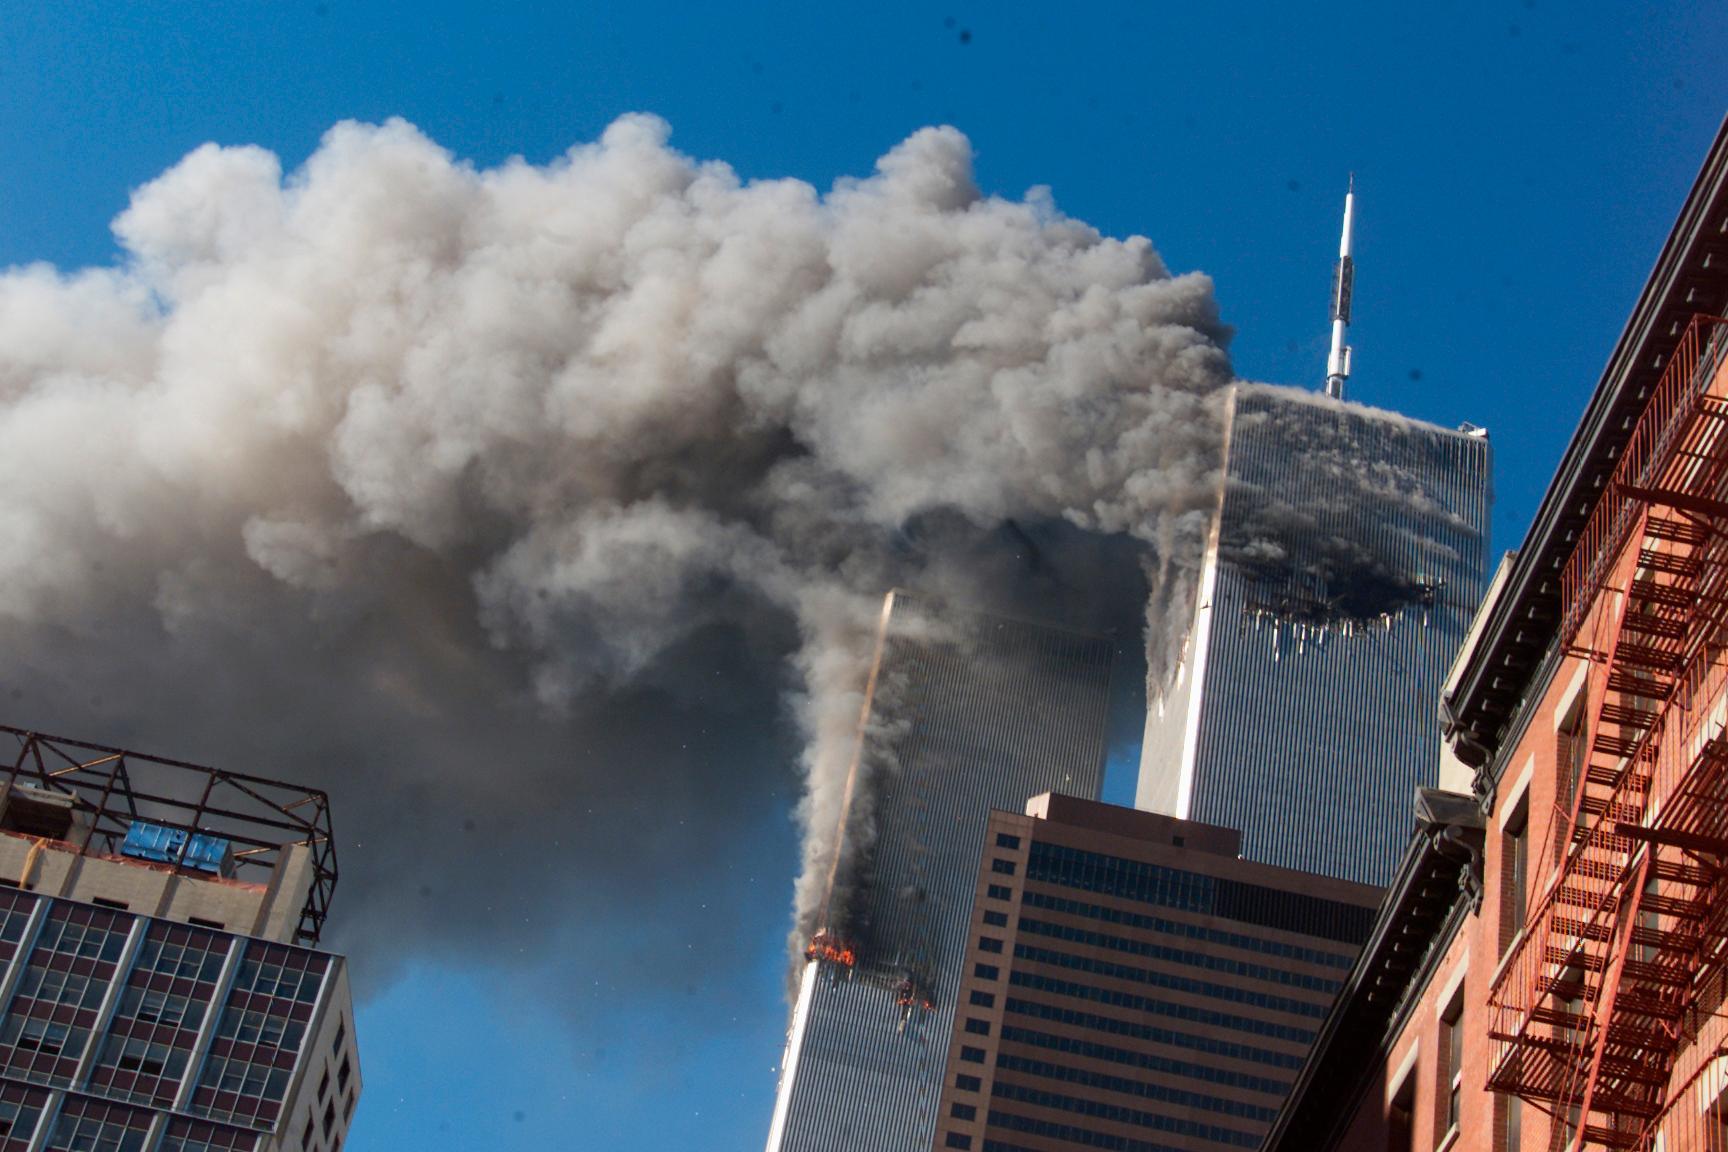 Terrorrörelsen al-Qaida låg bakom terrorattackerna i USA den 11 september 2001, då bland annat World Trade Center attackerades. Omkring 3 000 människor dödades i dåden.